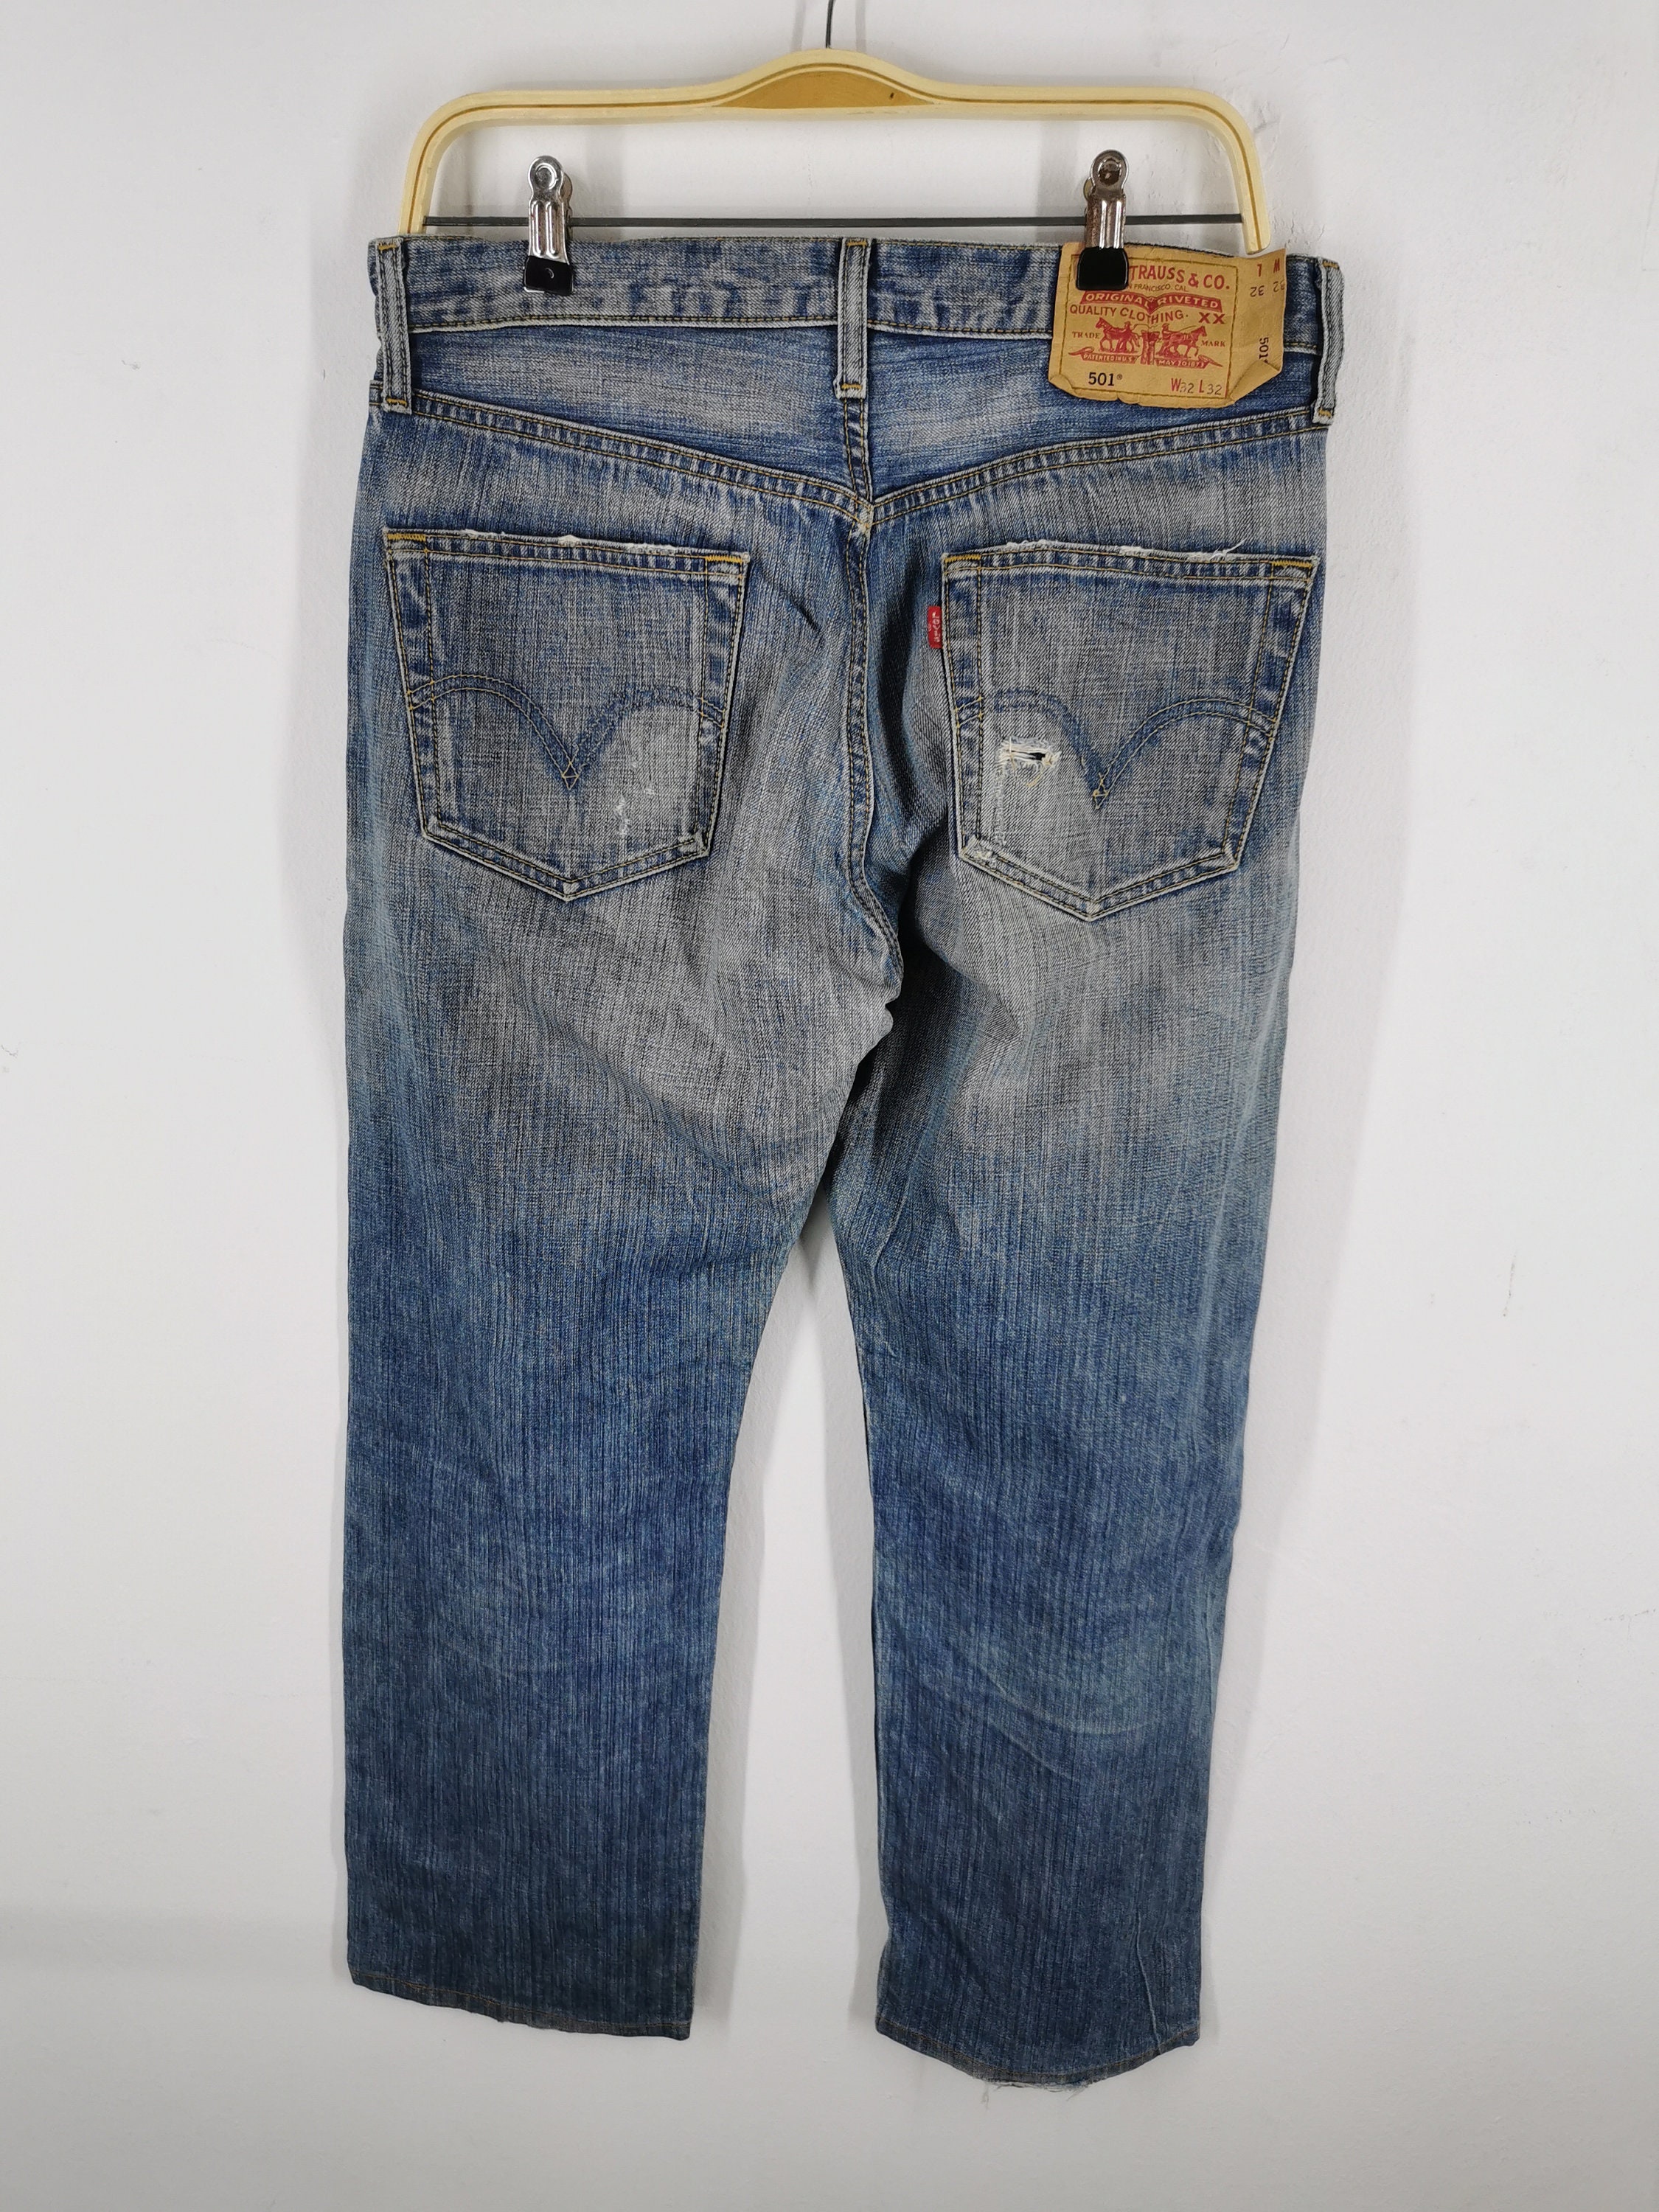 Levis 501 Jeans Distressed Size 32 Levis Denim Pants Levis 501 | Etsy